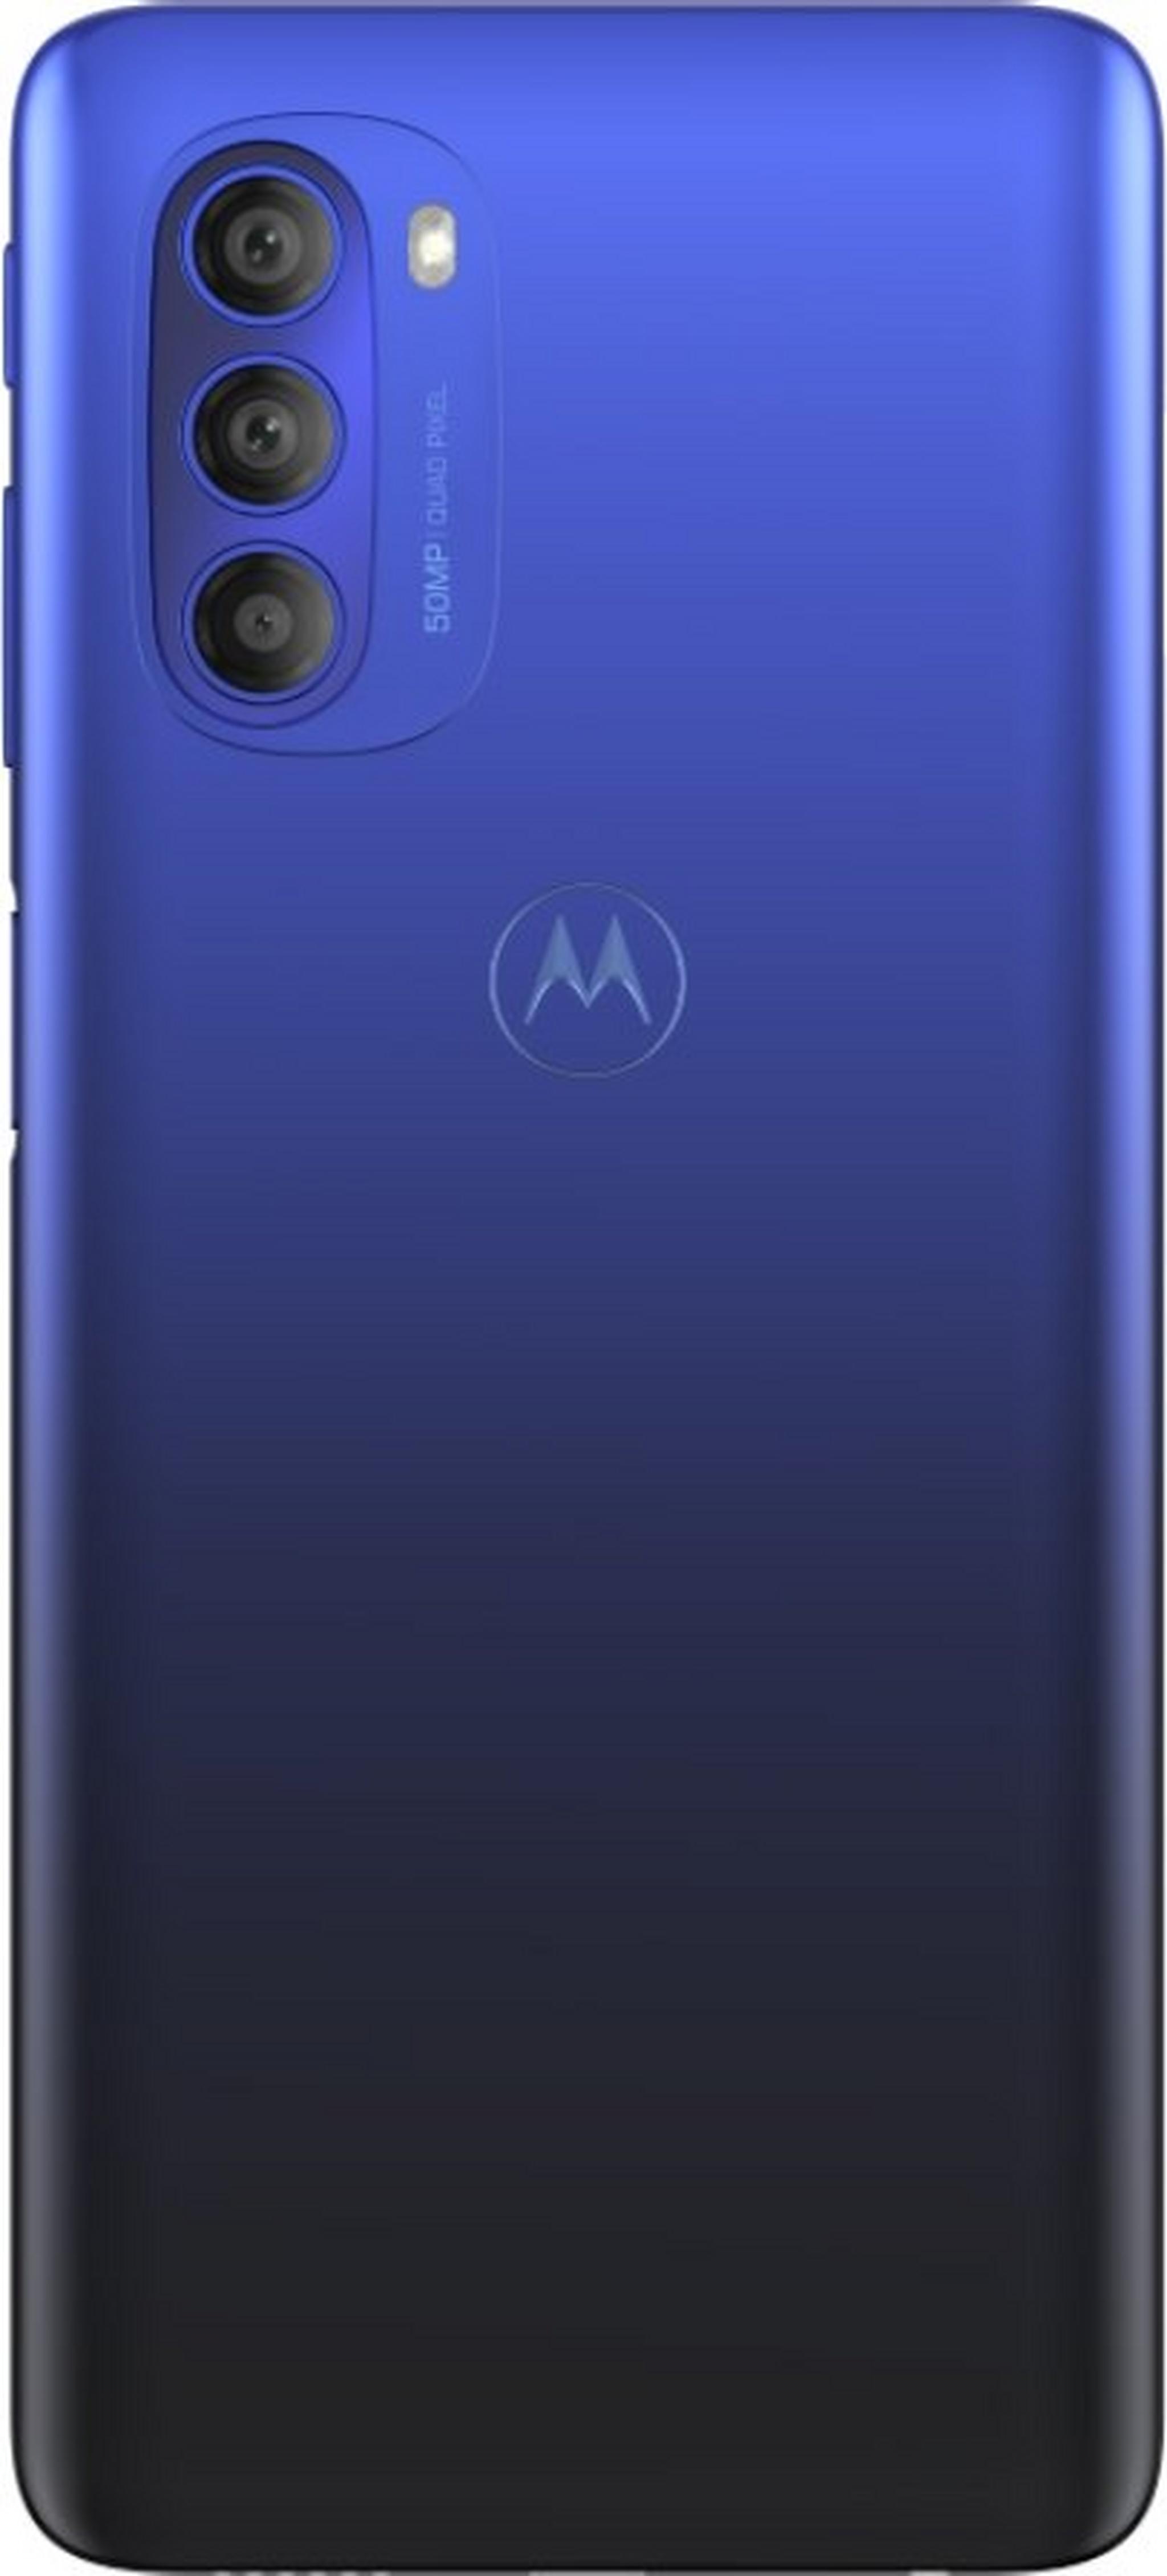 هاتف موتورولا موتو جي 51 بسعة 128 جيجابايت - أزرق